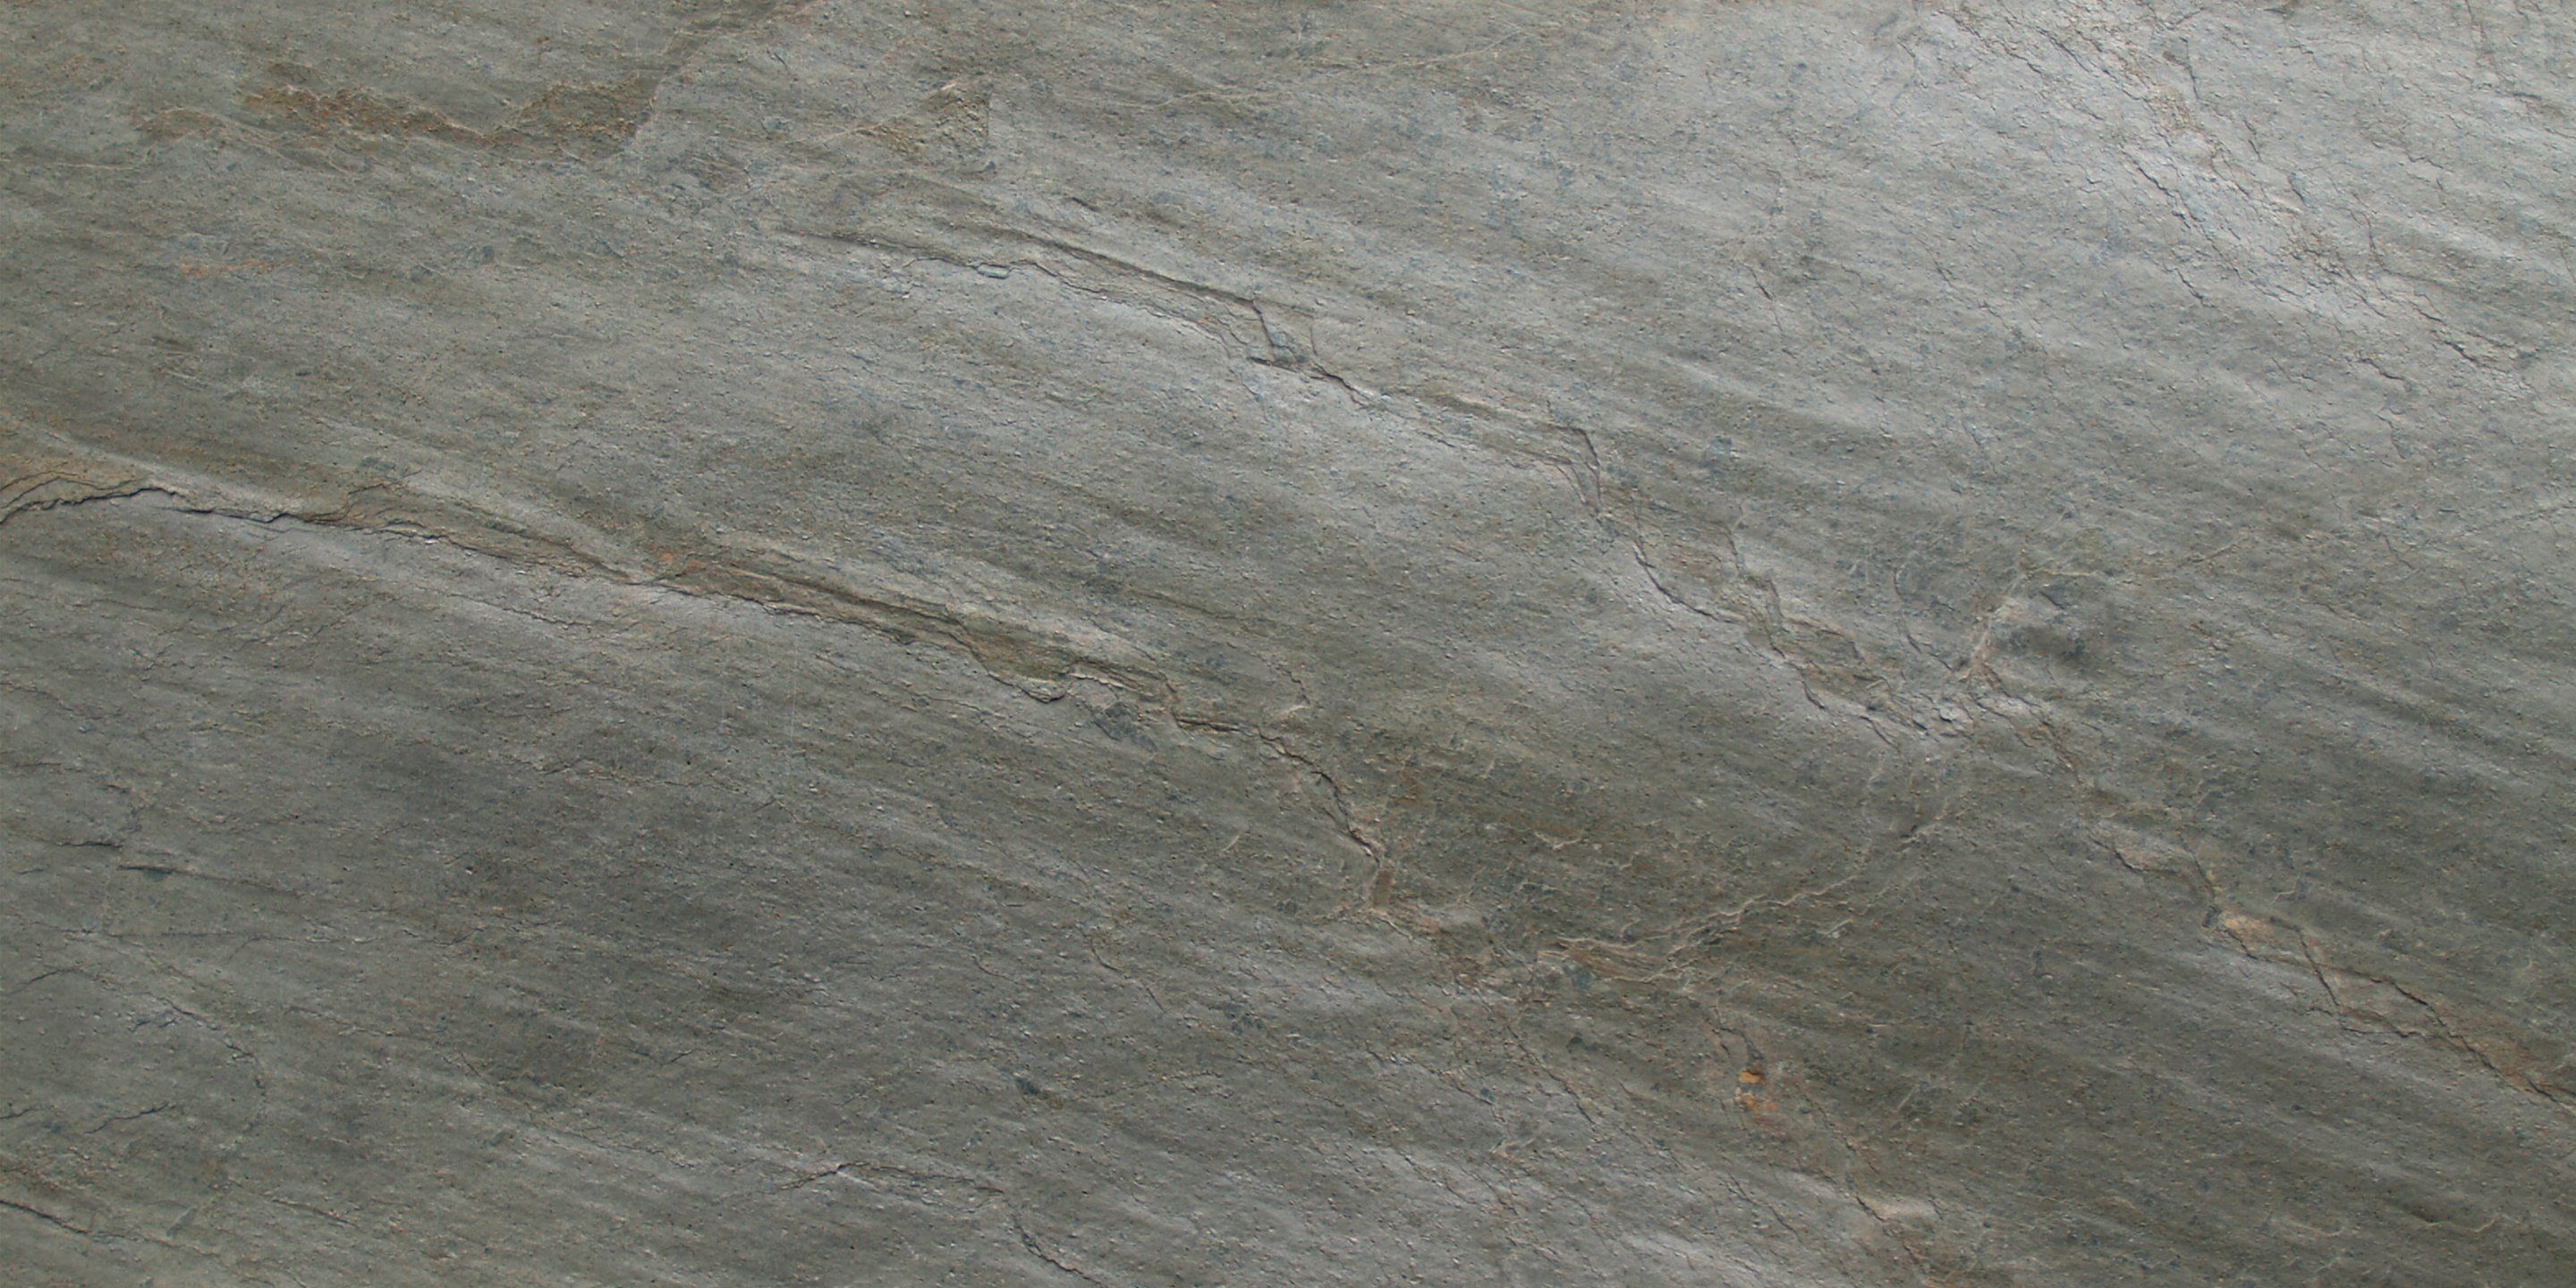 Slate Lite Dekorpaneele Mare, BxL: 120x240 cm, 2,88 qm, (1-tlg) aus Echtstein